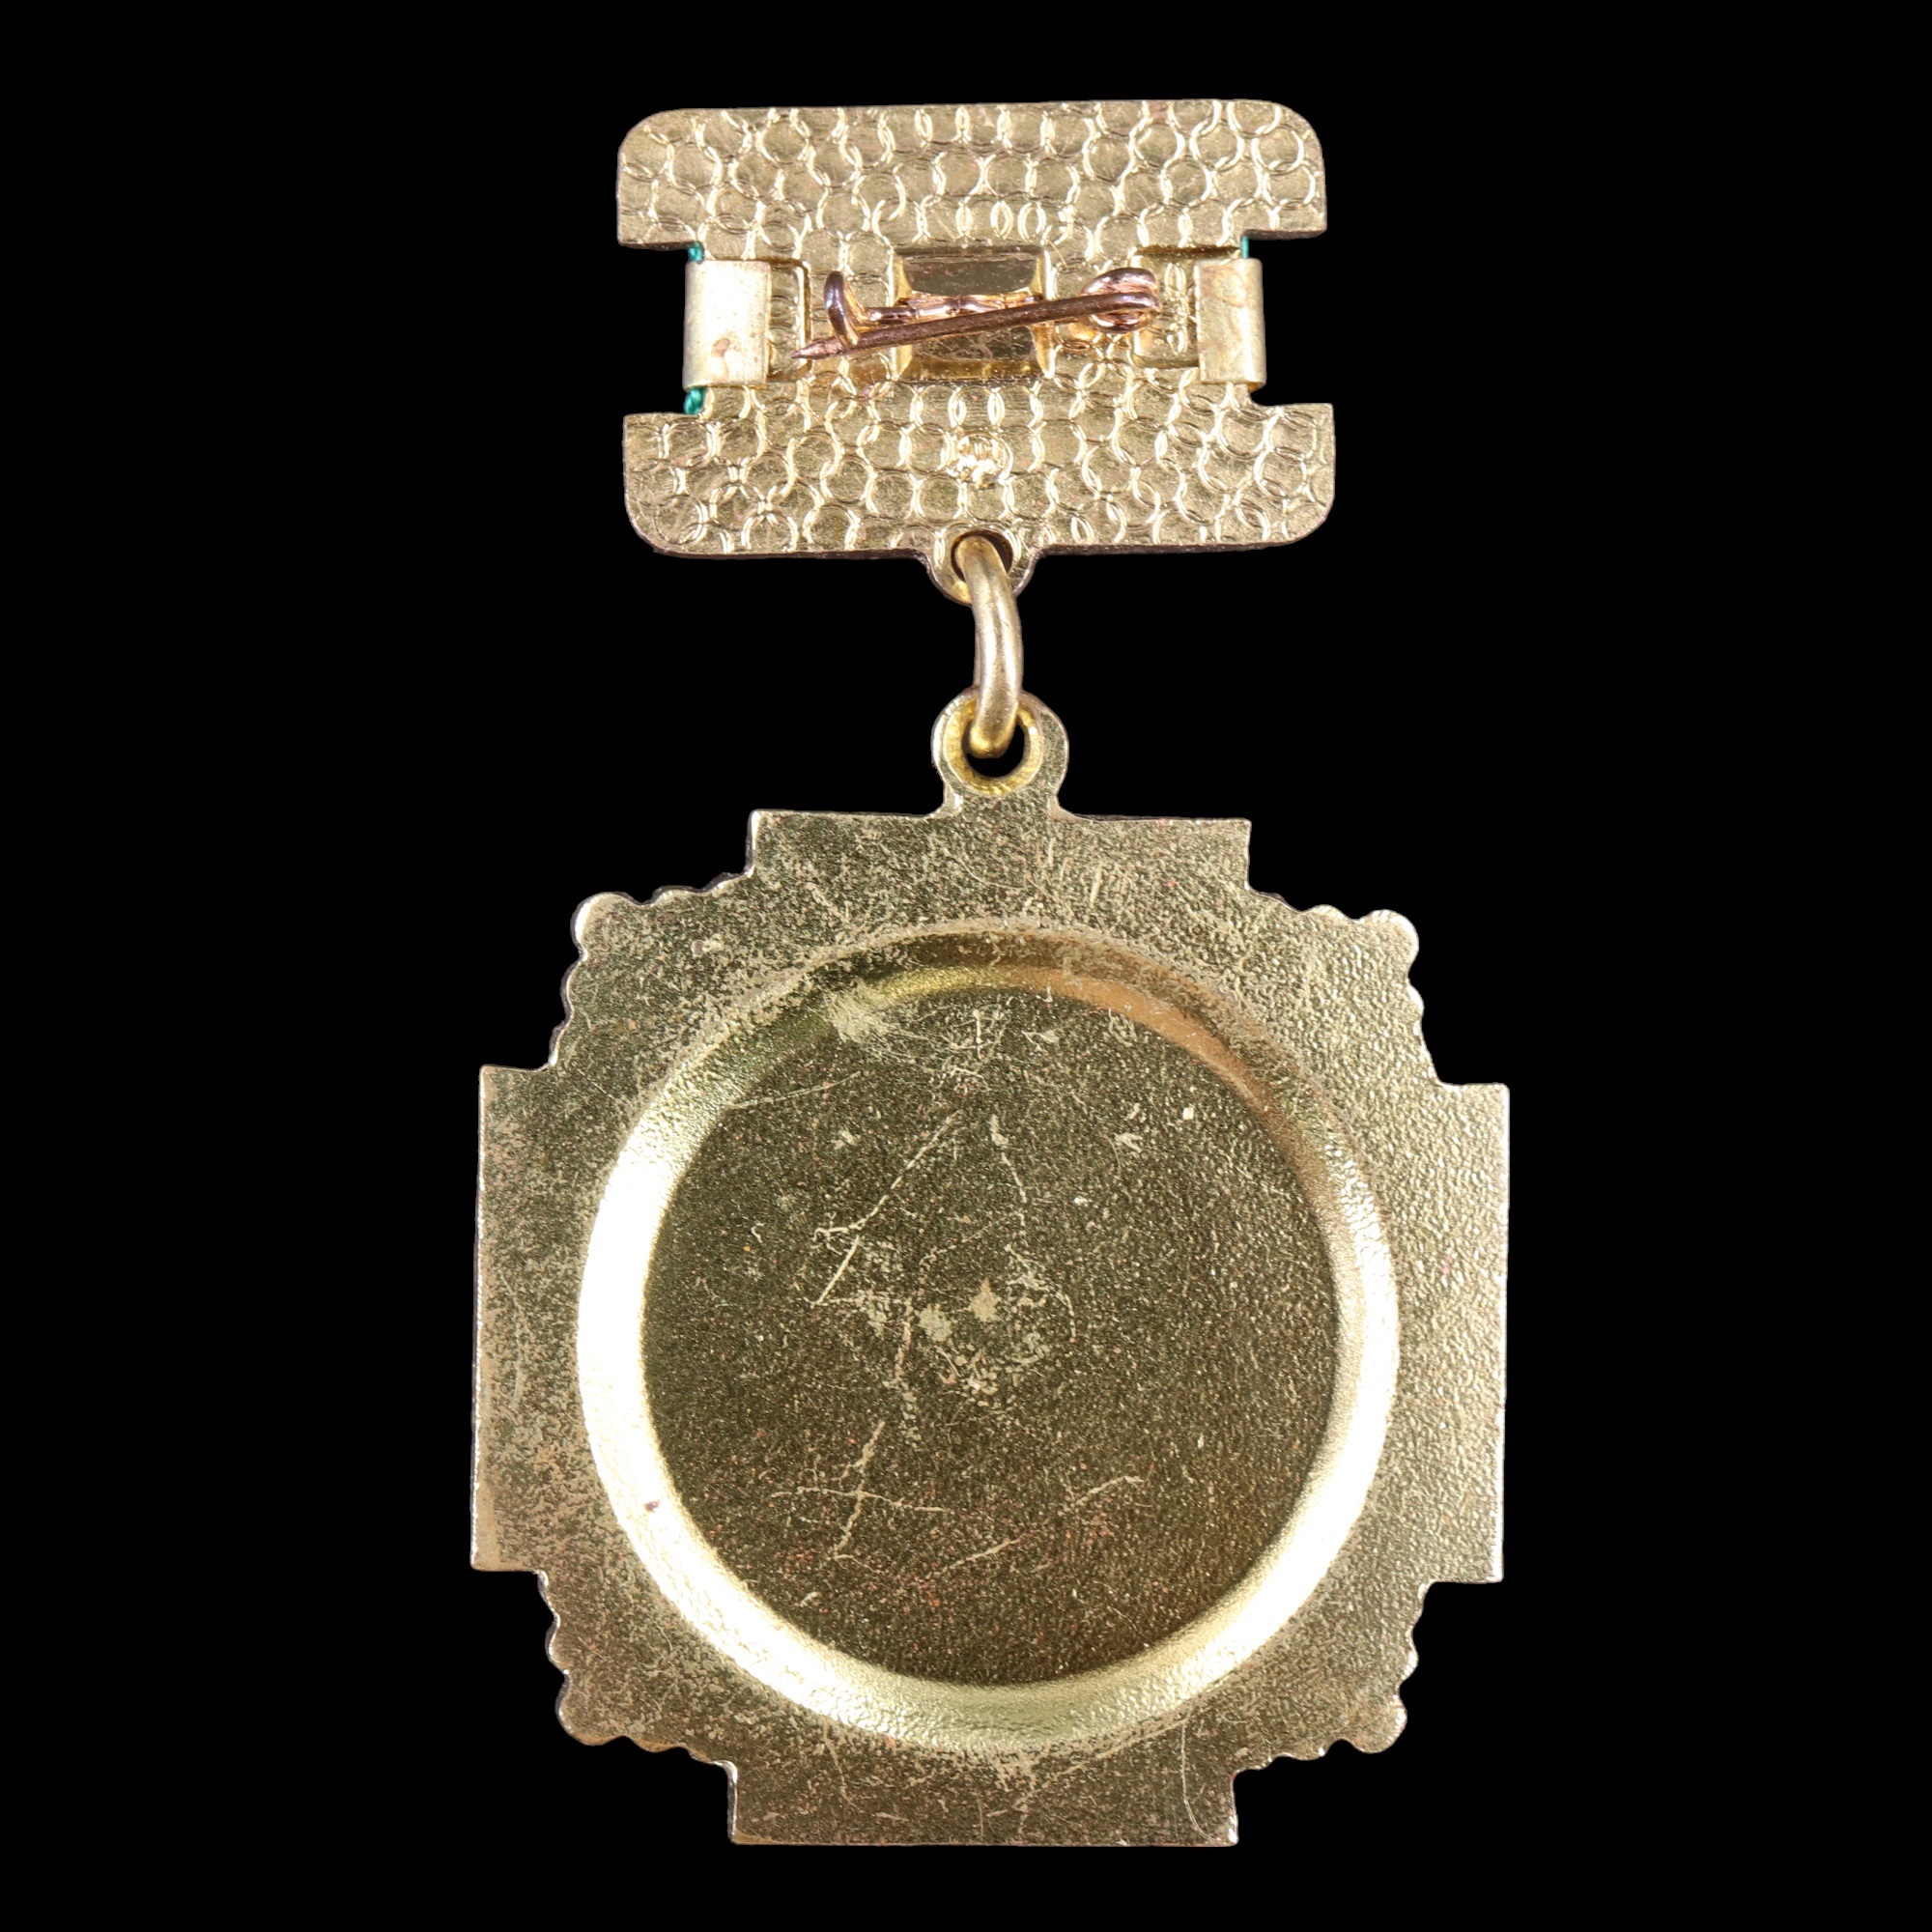 A Soviet Chernobyl Liquidator Medal - Image 2 of 2